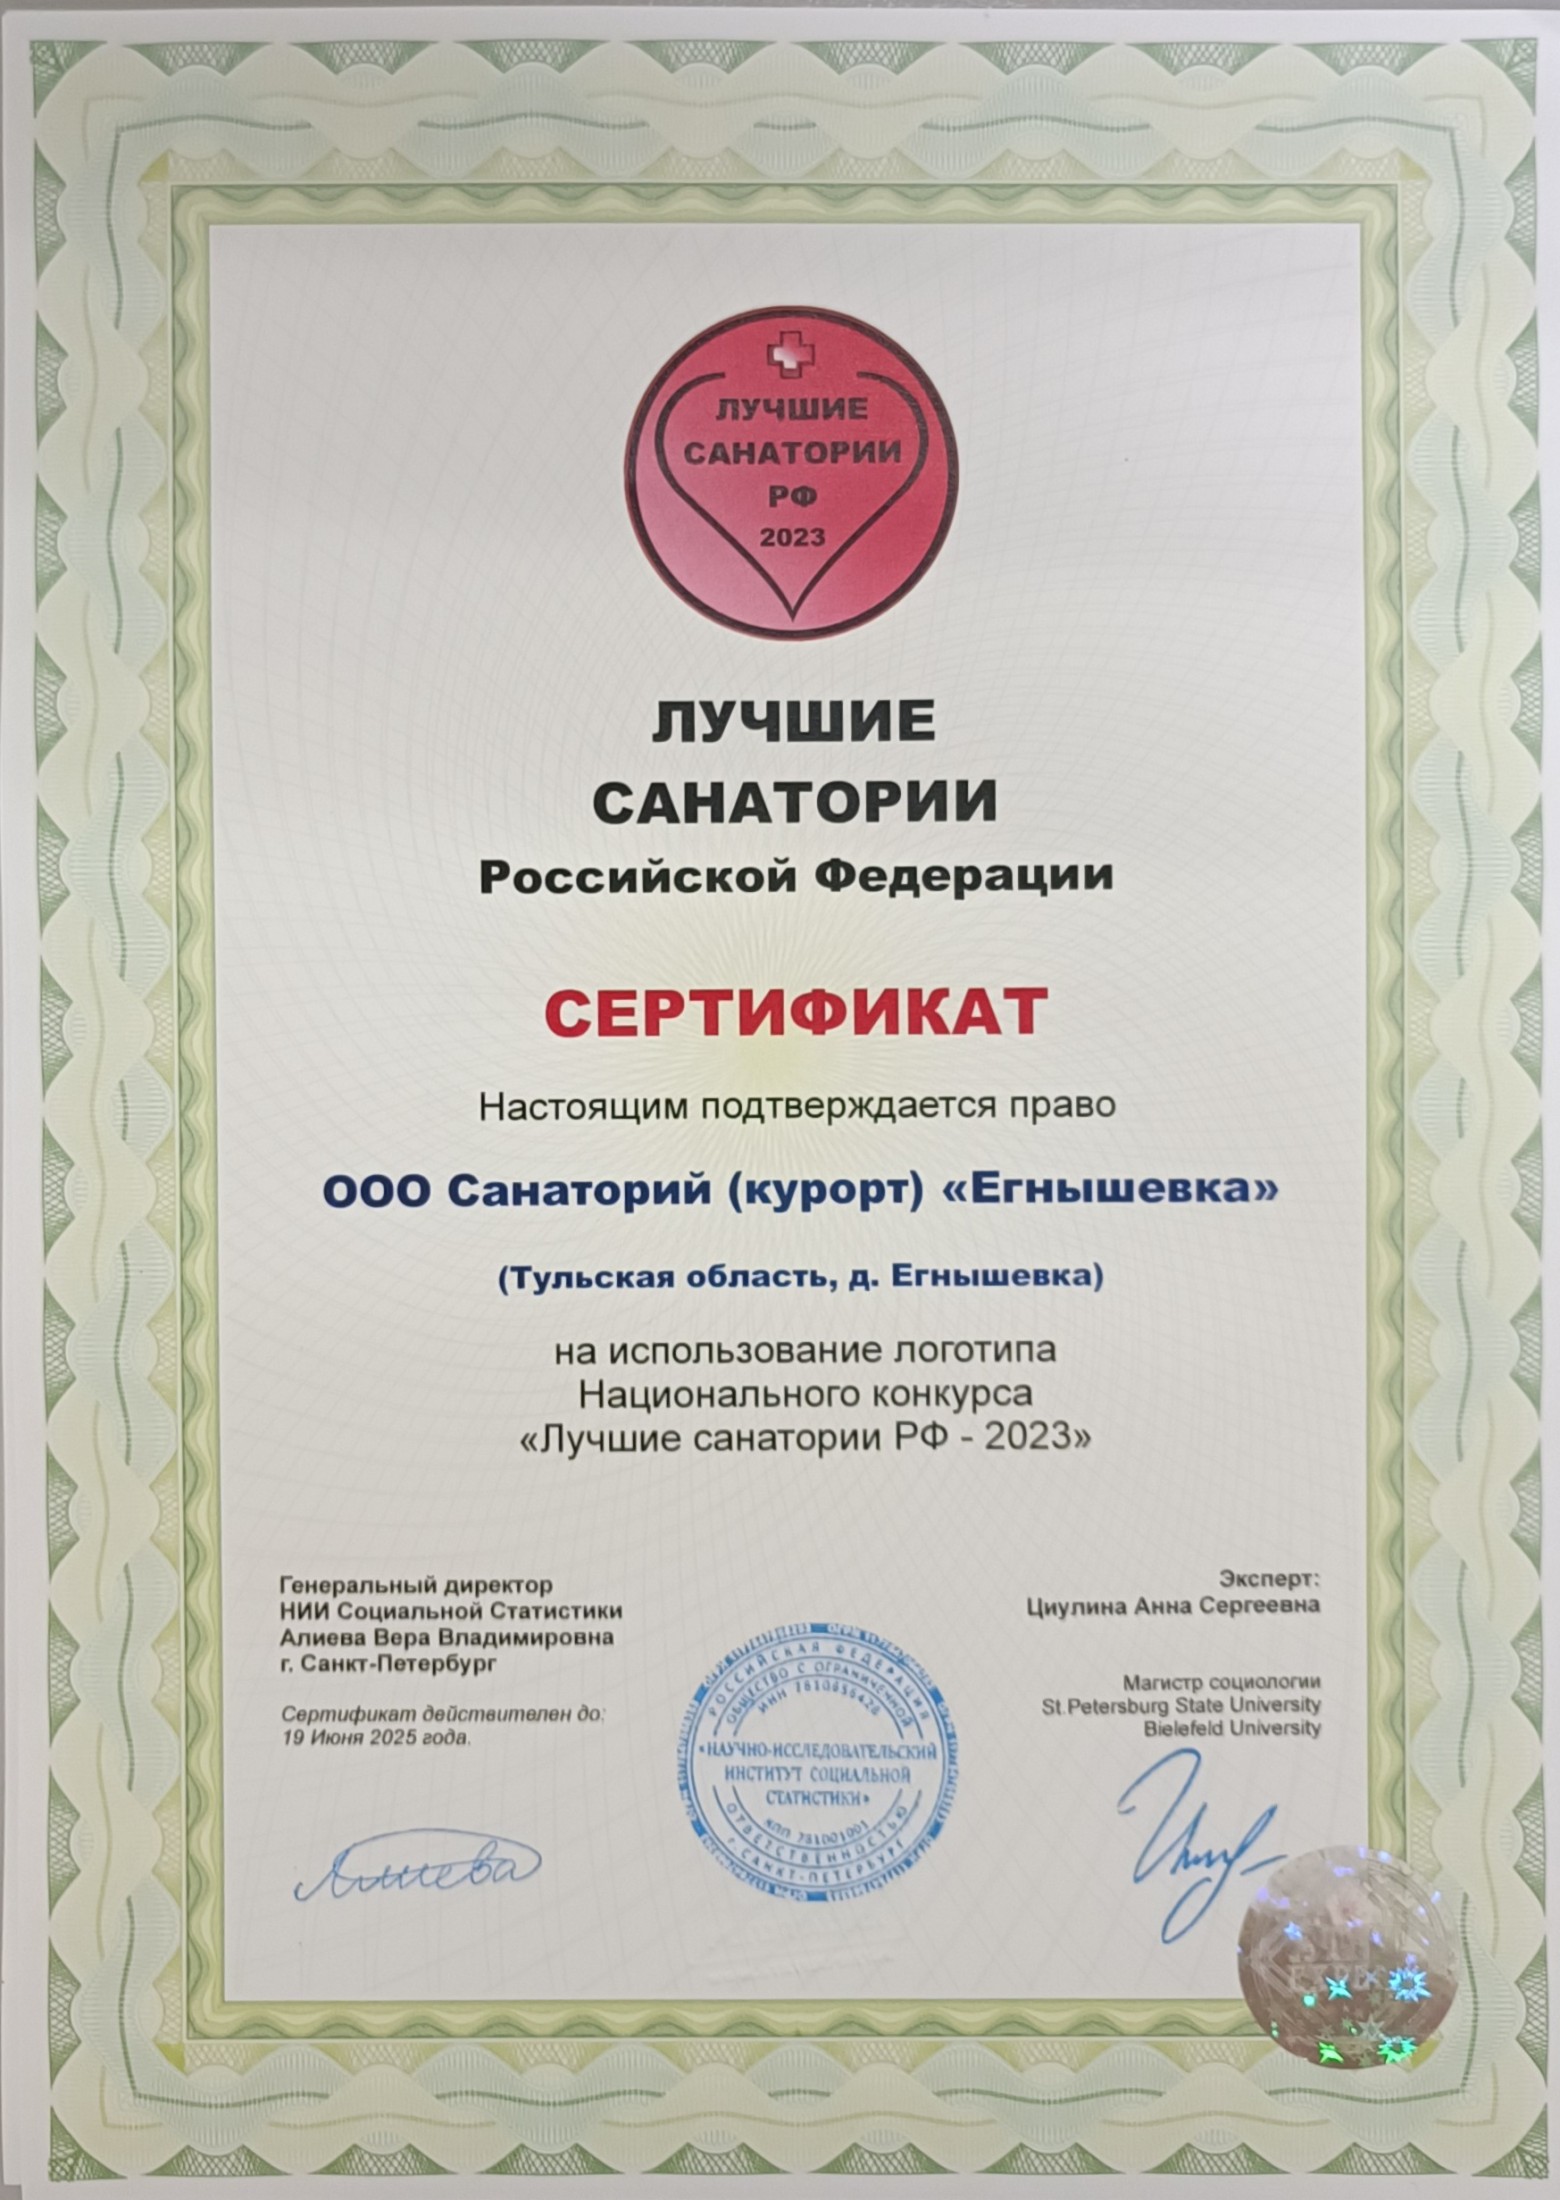 Сертификат лауреата конкурса Лучший санаторий 2023 г.